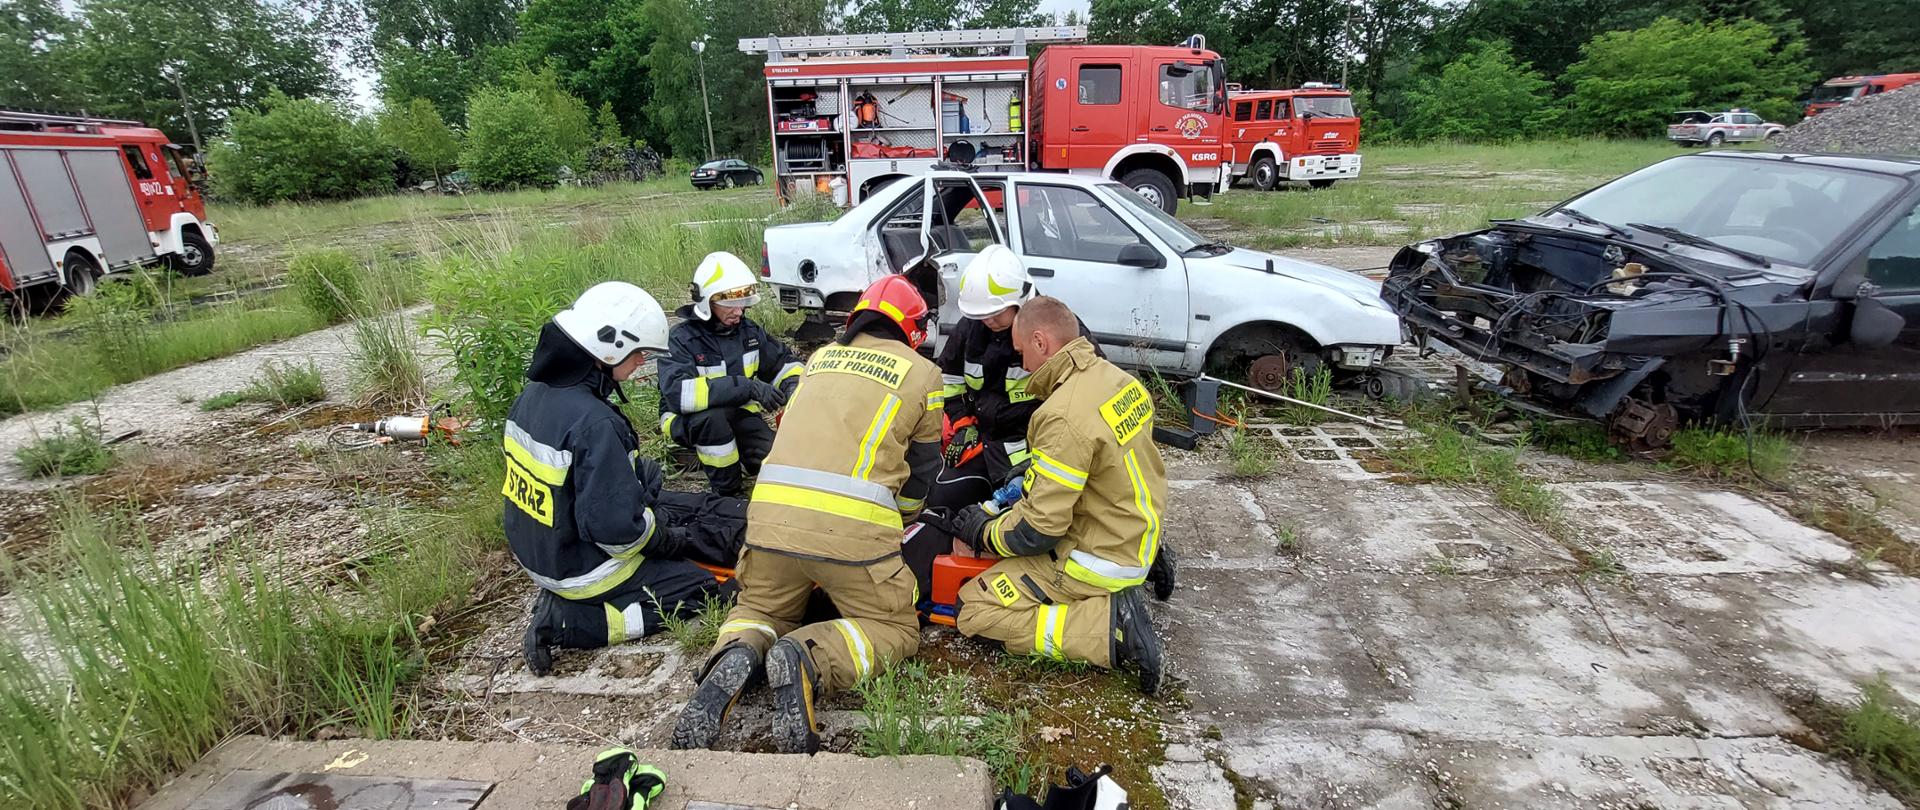 Strażacy ćwiczą udzielanie pierwszej pomocy osobie poszkodowanej w wypadku komunikacyjnym